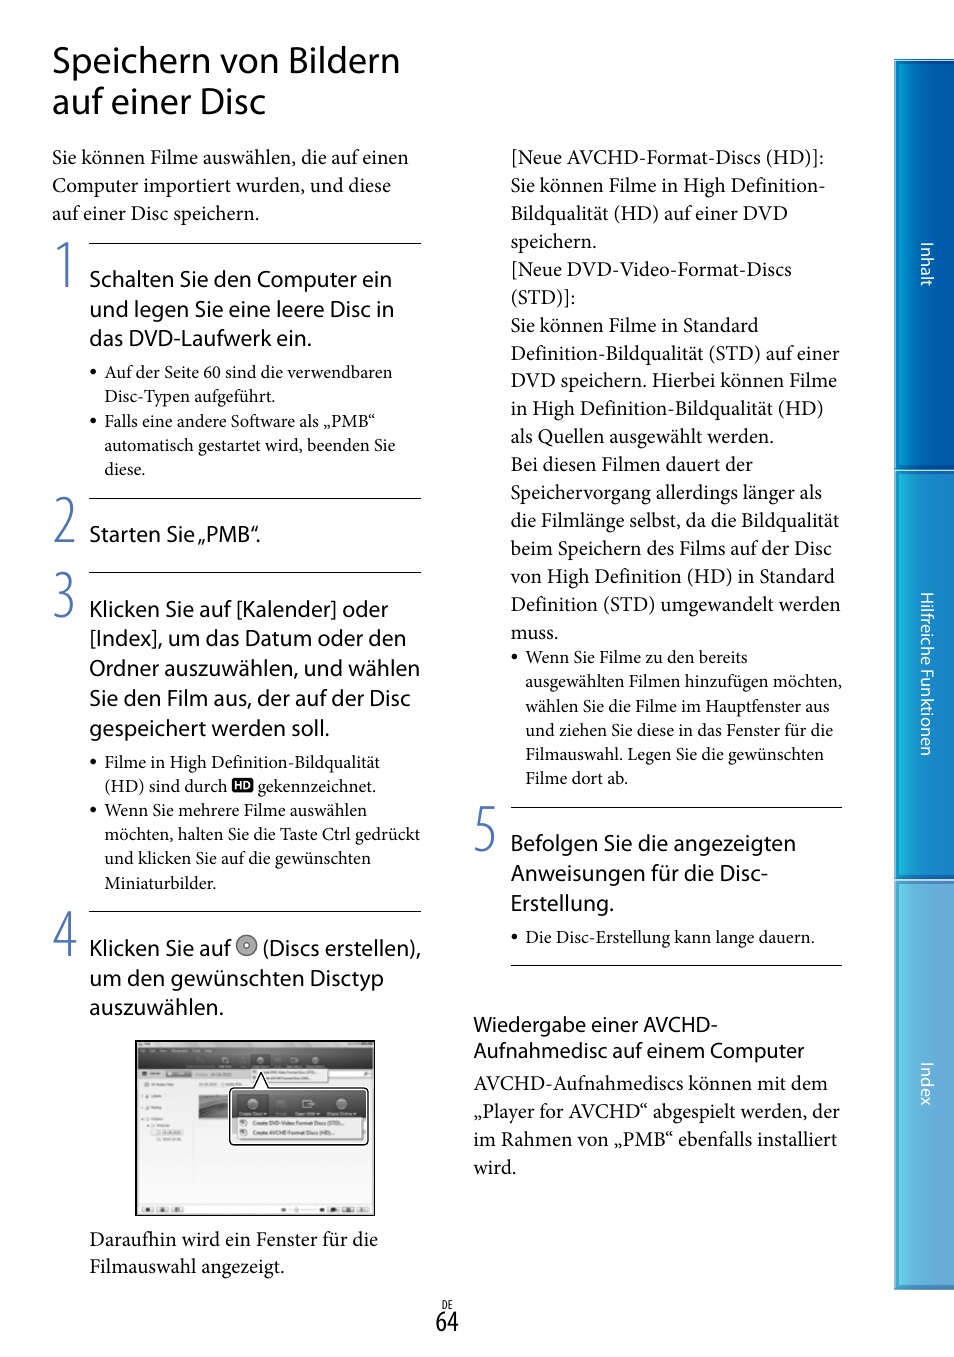 Speichern von bildern auf einer disc | Sony HDR-PJ10E Benutzerhandbuch | Seite 64 / 141